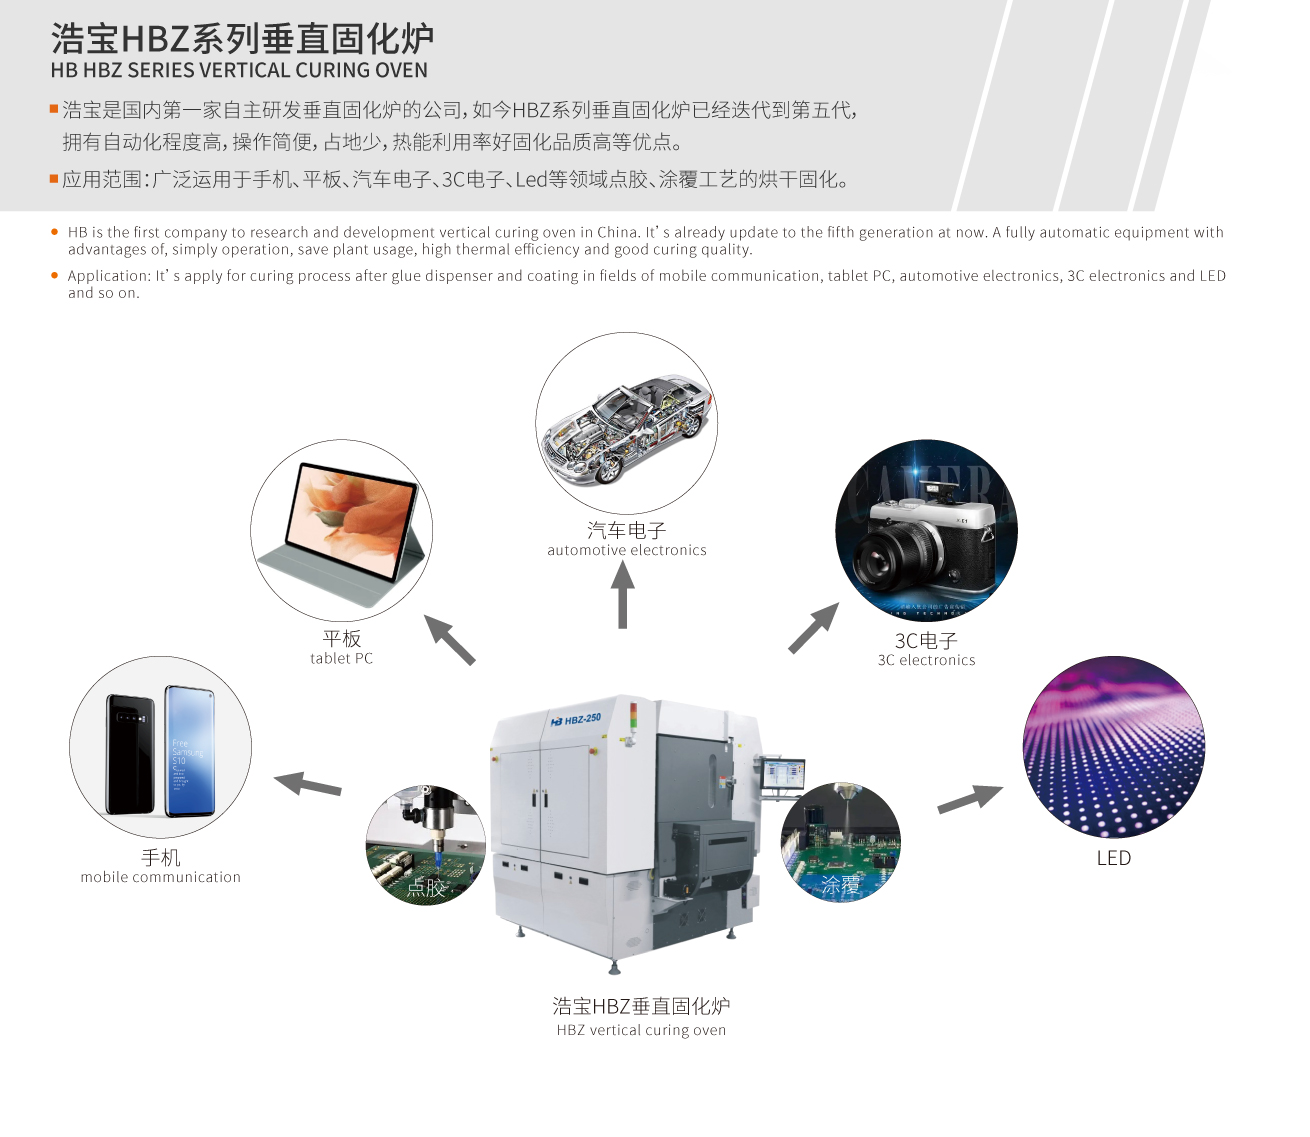 浩宝垂直固化炉可以用于手机、平板、汽车电子、3C电子、Mini LED等多个领域